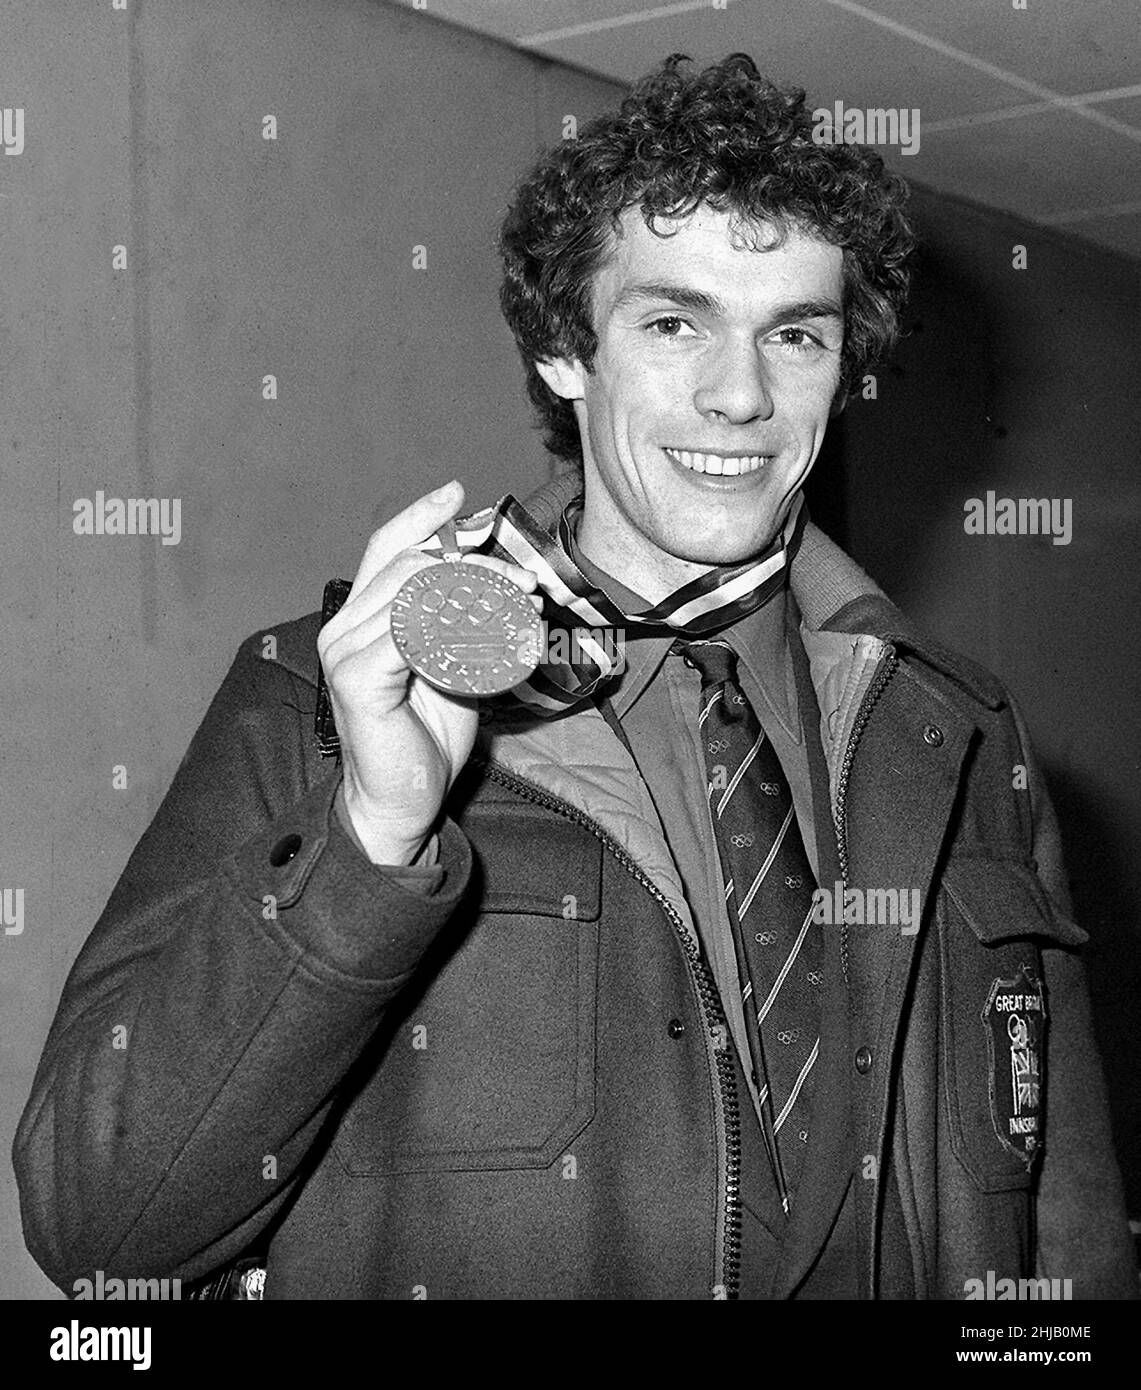 Photo du dossier du 16-02-1976 de First Briton pour gagner le championnat olympique de patinage artistique masculin, John Curry, 26, montre sa médaille d'or à l'aéroport d'Heathrow à son arrivée d'Innsbruck.Curry était au sommet de sa carrière en 1976 et a effectué trois sauts triples pour devenir le premier médaillé d'or de patinage artistique masculin de Grande-Bretagne sur son grand rival, Vladimir Kovalyov de Russie.Curry a également remporté des titres mondiaux et européens la même année, avant de passer brusquement au niveau professionnel.Quatre ans plus tard, son compagnon britannique, Robin cousins, lui succéda comme champion du patinage artistique olympique masculin.Date de publication : vendredi Ja Banque D'Images